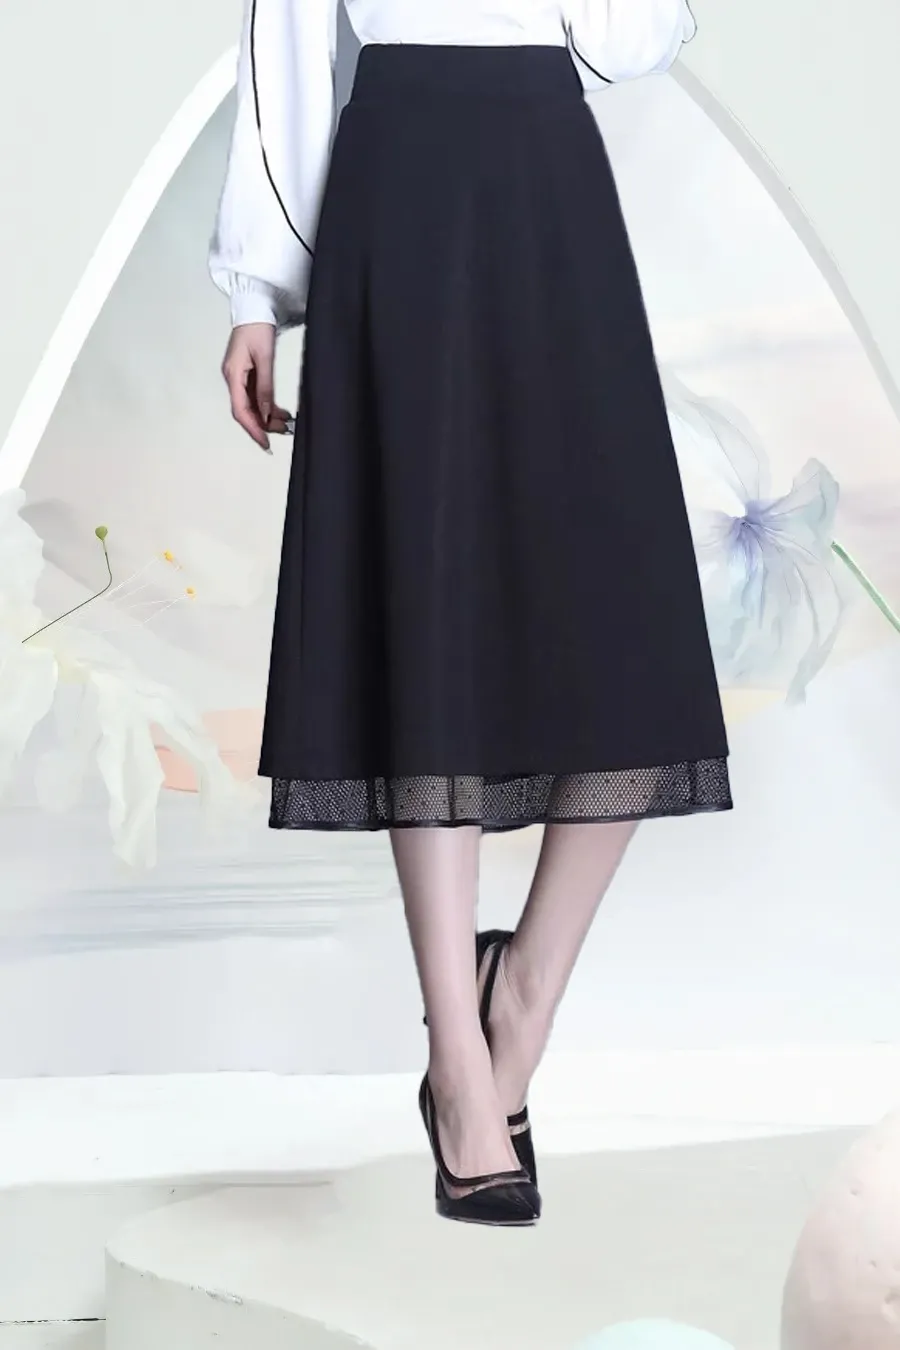 Điểm danh 5 mẫu chân váy dài Trung Quốc cực hot bạn nên nhập về kinh doanh